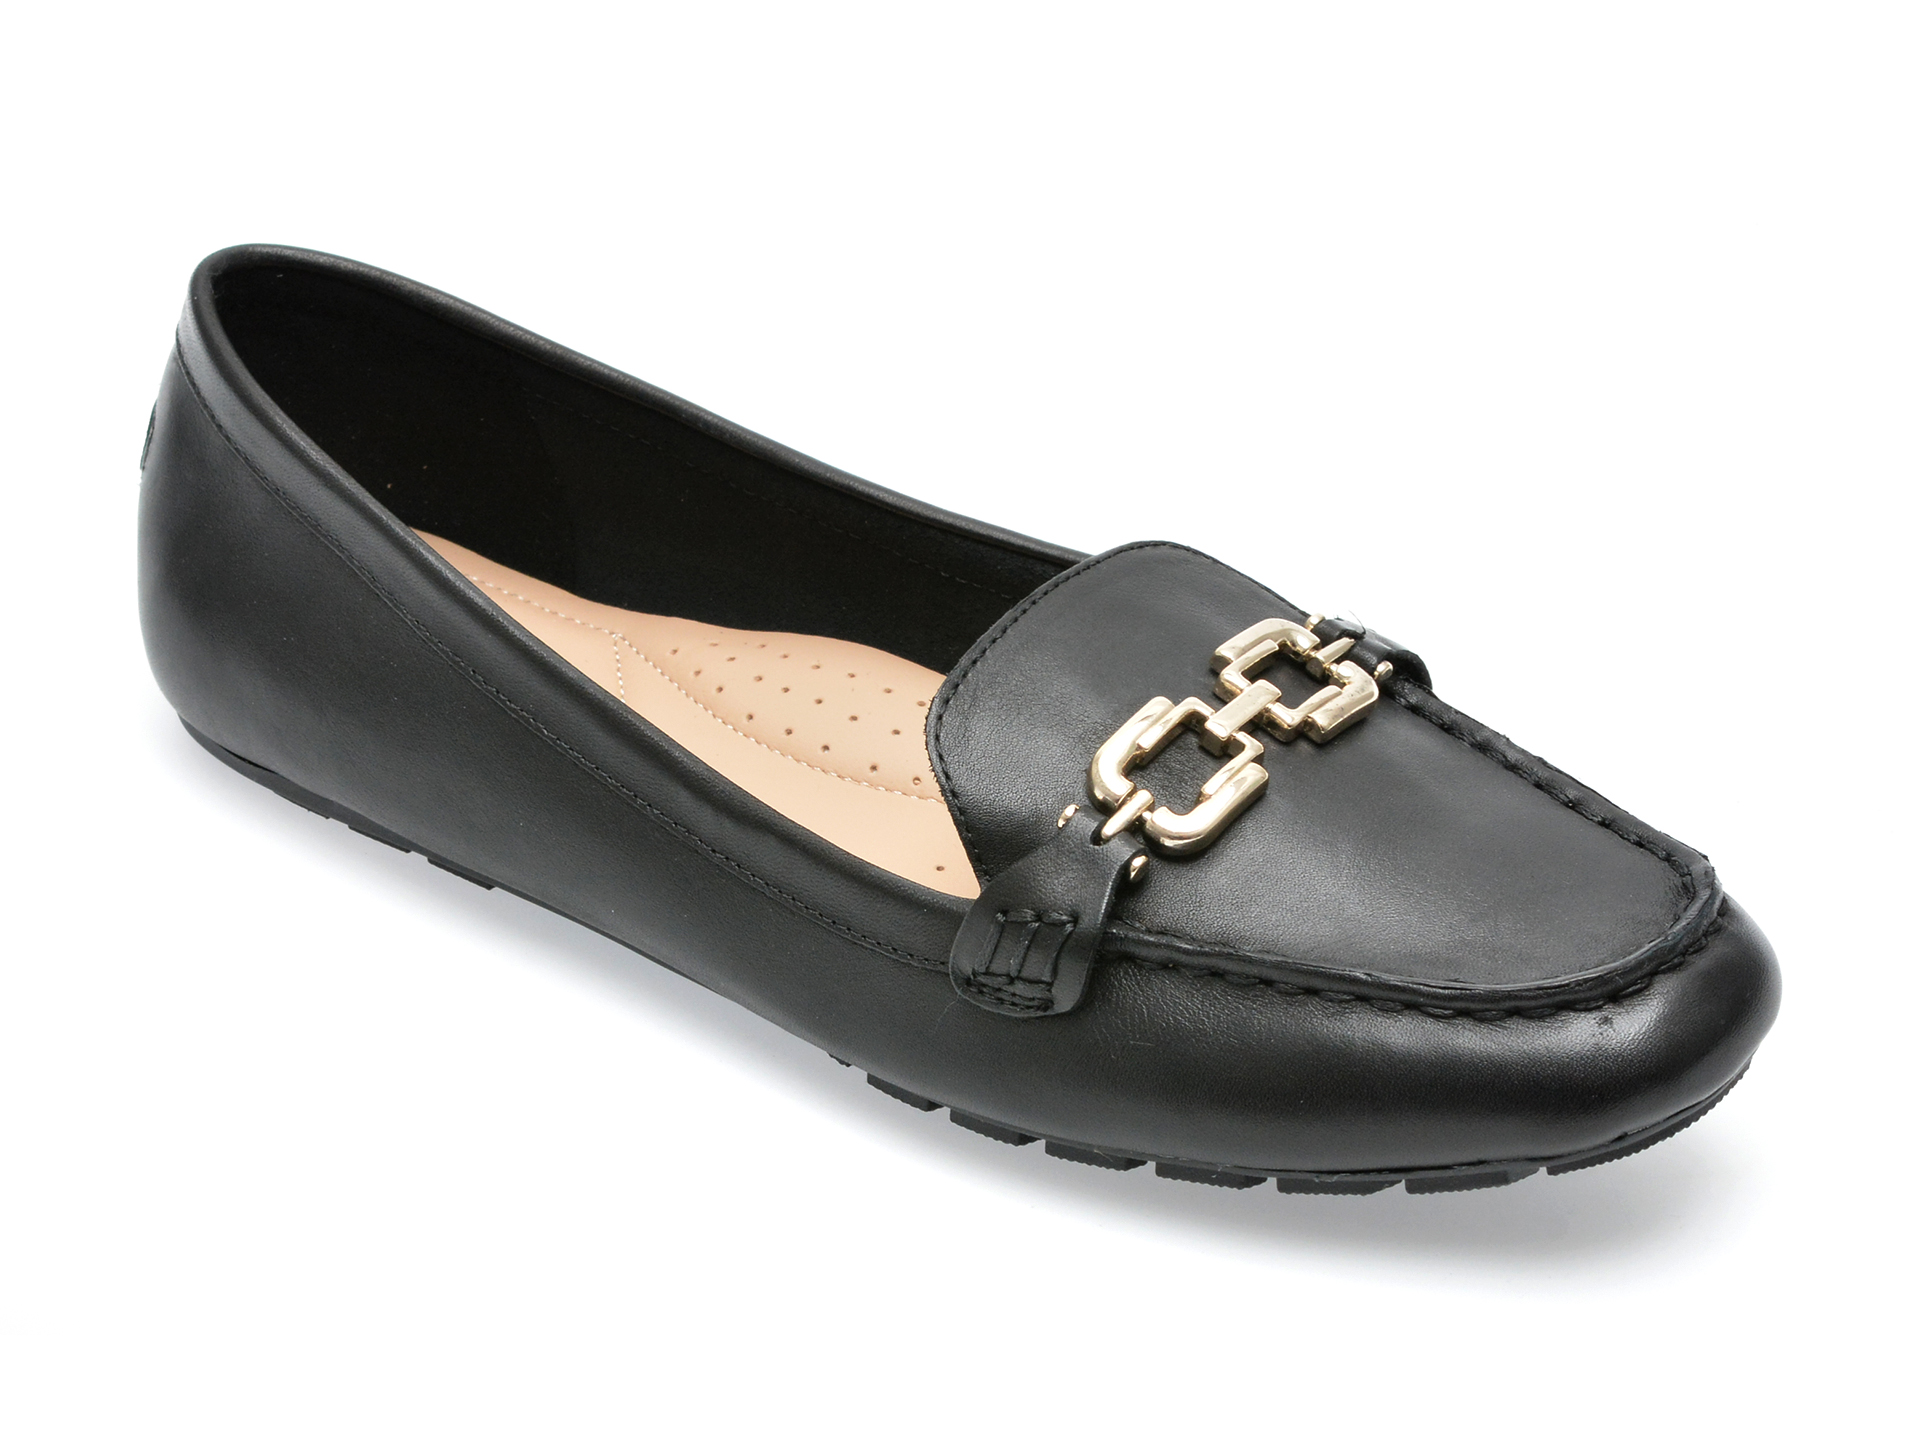 Pantofi ALDO negri, ULAREJAN001, din piele naturala femei 2023-02-03